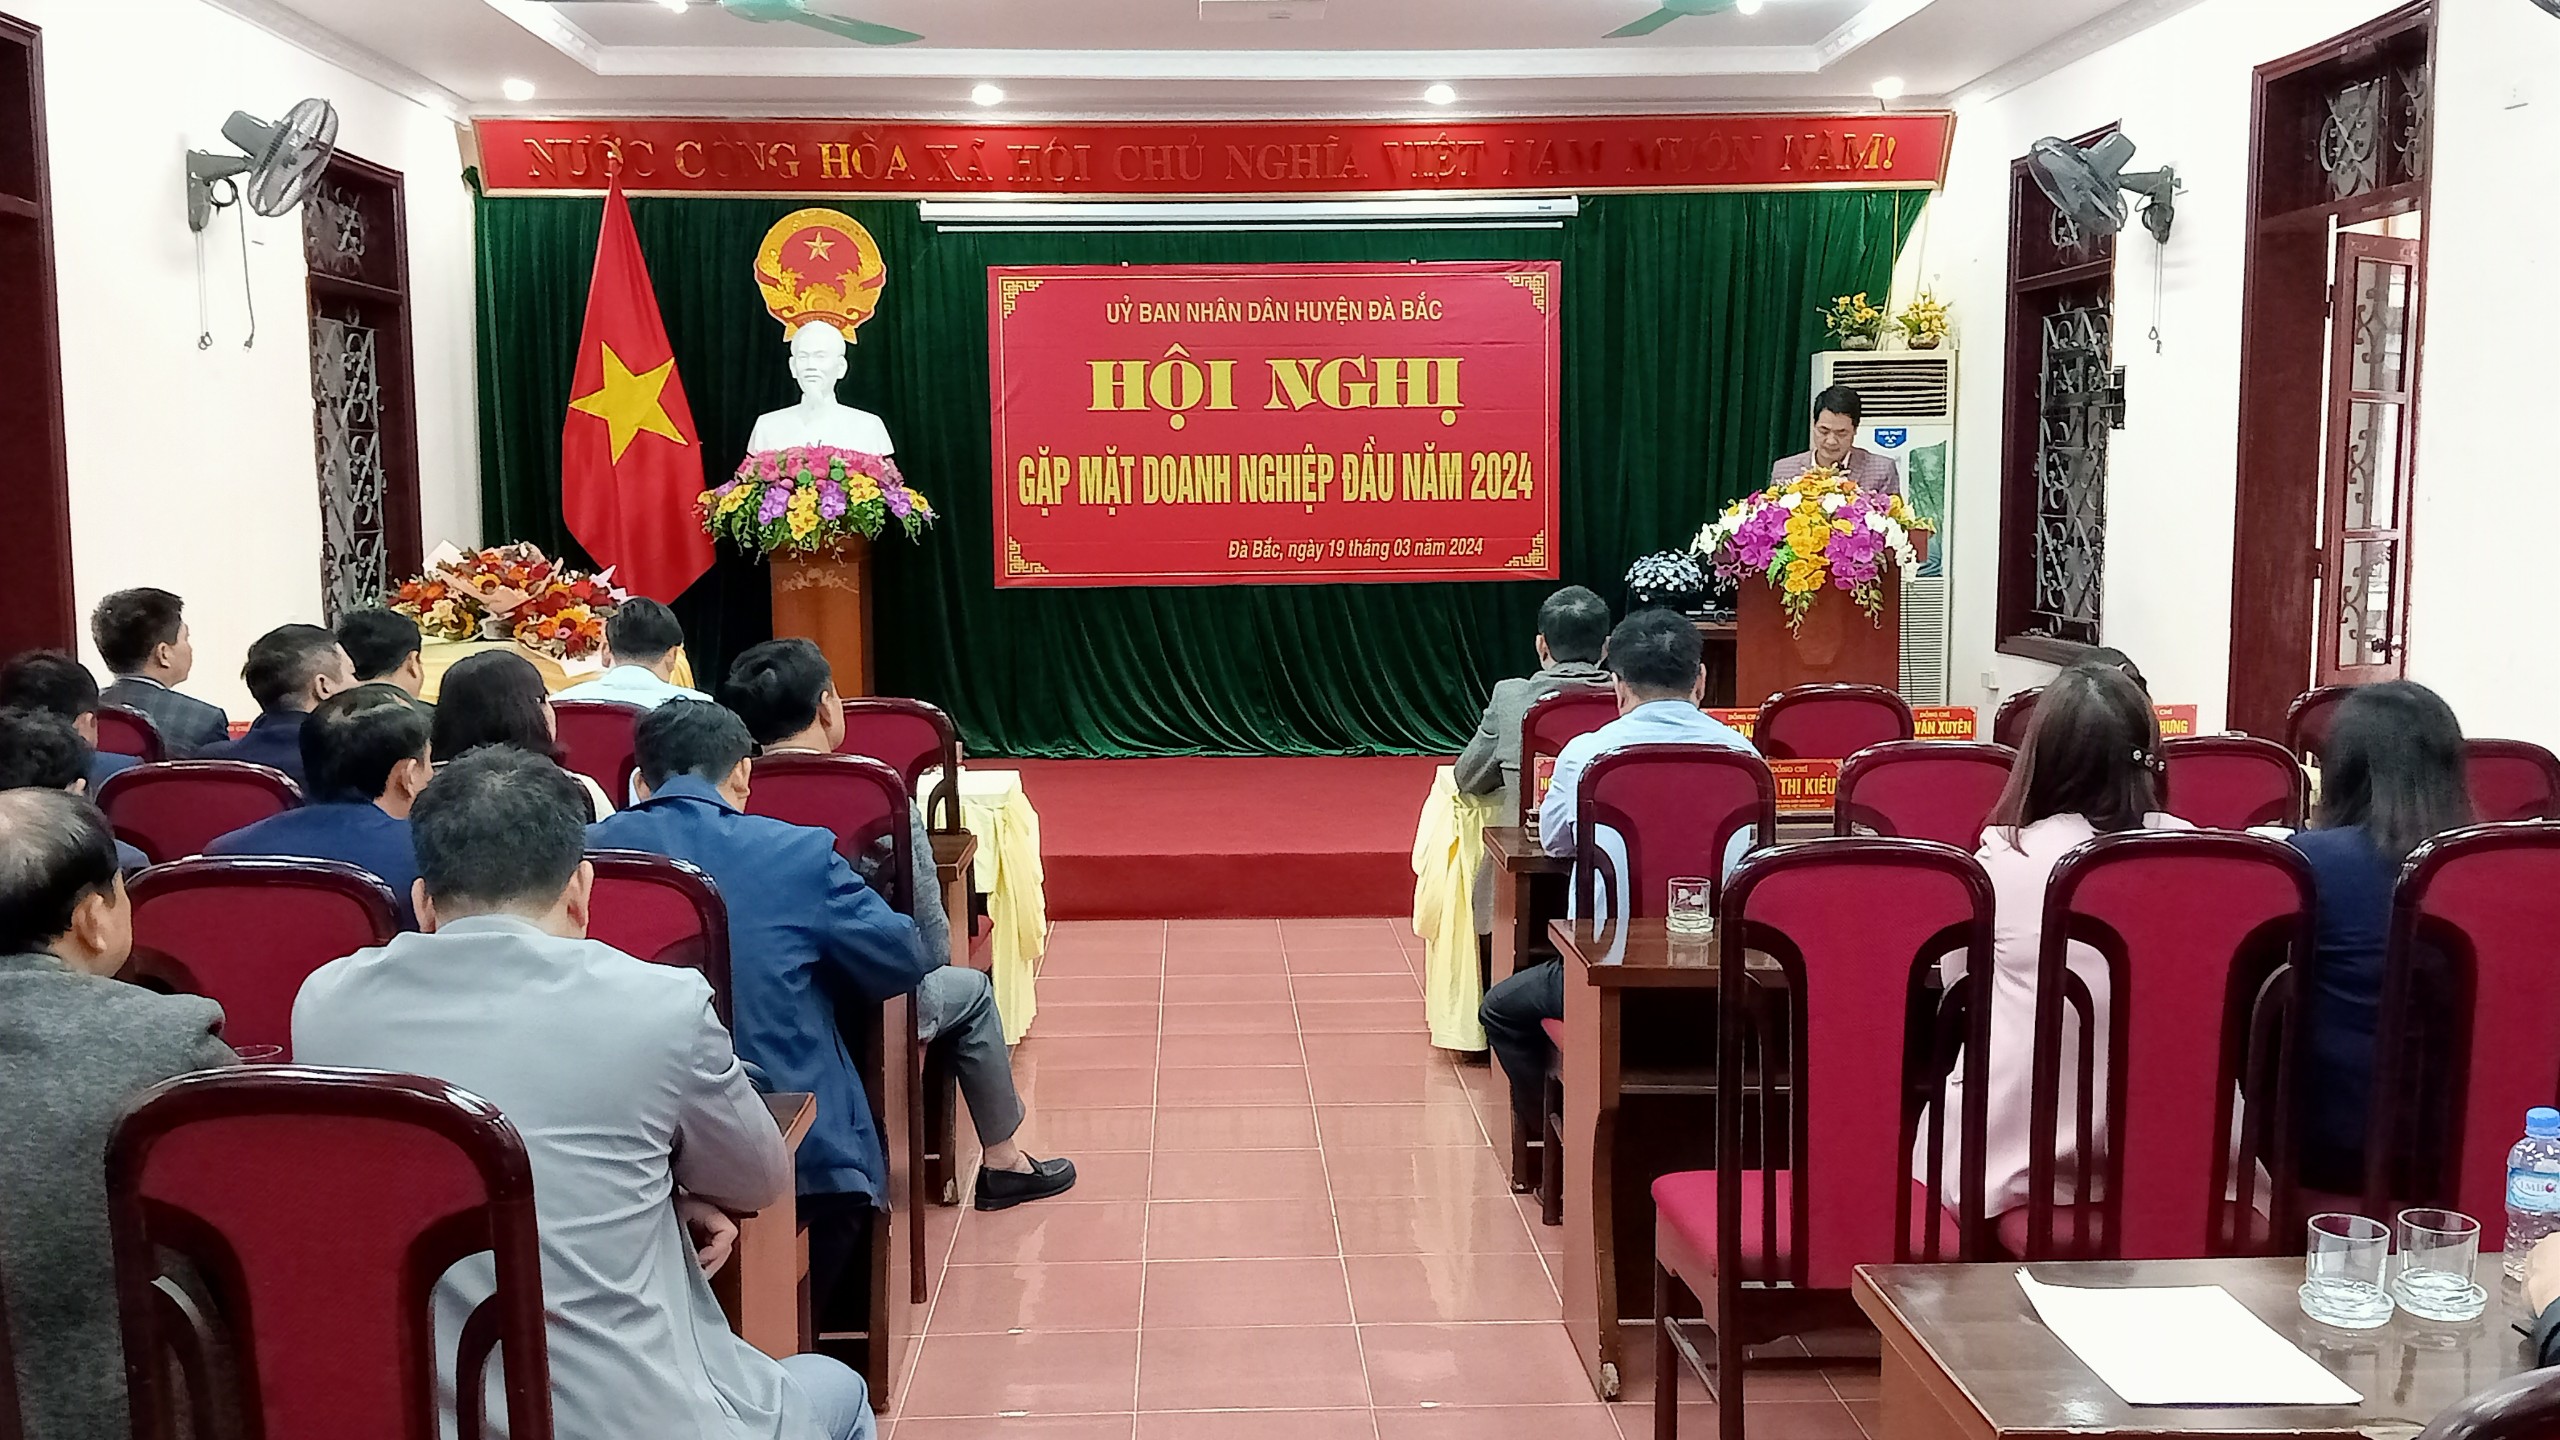 UBND huyện Đà Bắc tổ chức Hội nghị gặp mặt doanh nghiệp đầu năm 2024